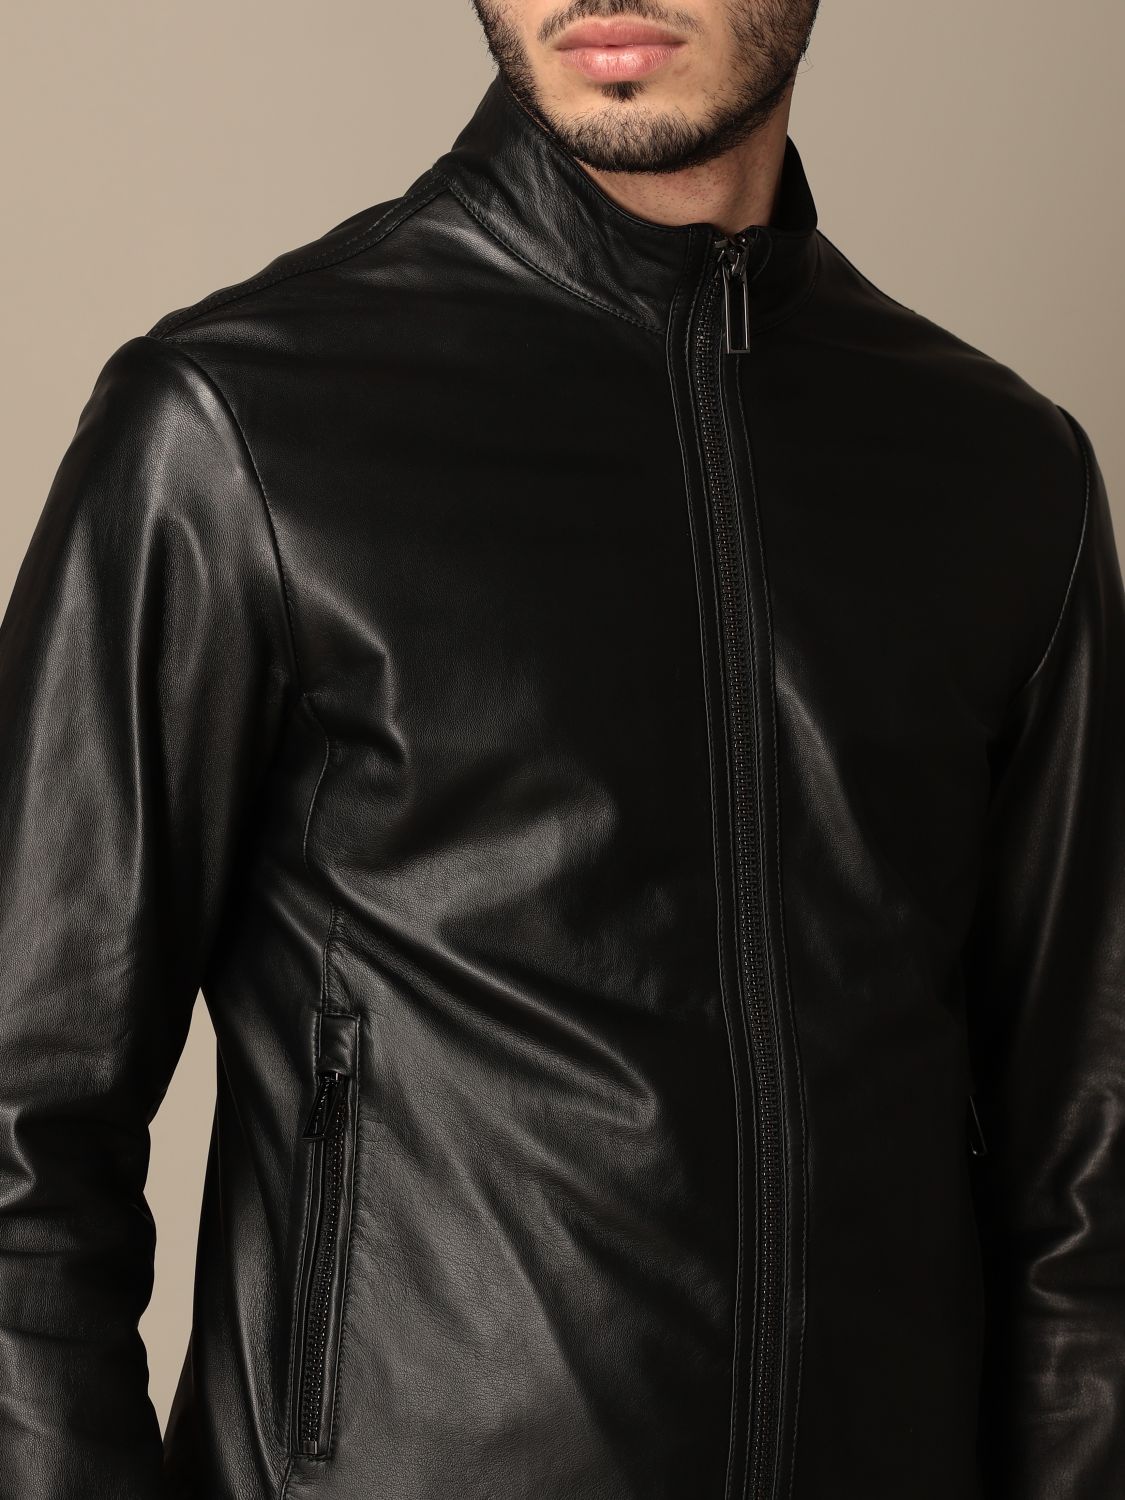 Emporio Armani Black Leather Jacket on Sale, SAVE 58%.